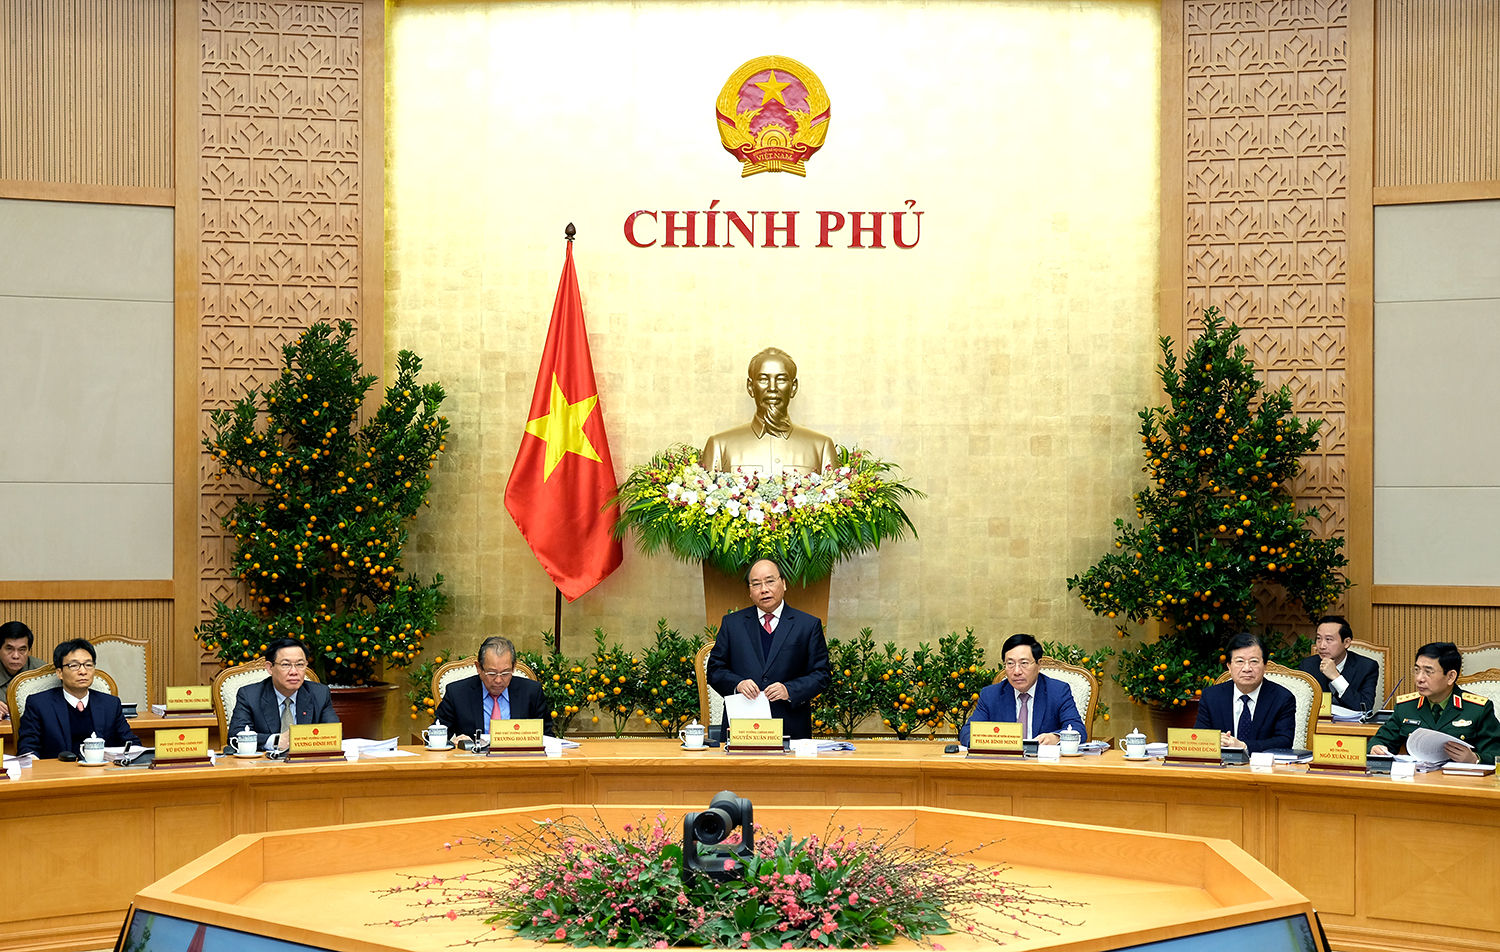 Thủ tướng Nguyễn Xuân Phúc sẽ chủ trì cuộc họp. Ảnh: Báo điện tử Chính phủ.